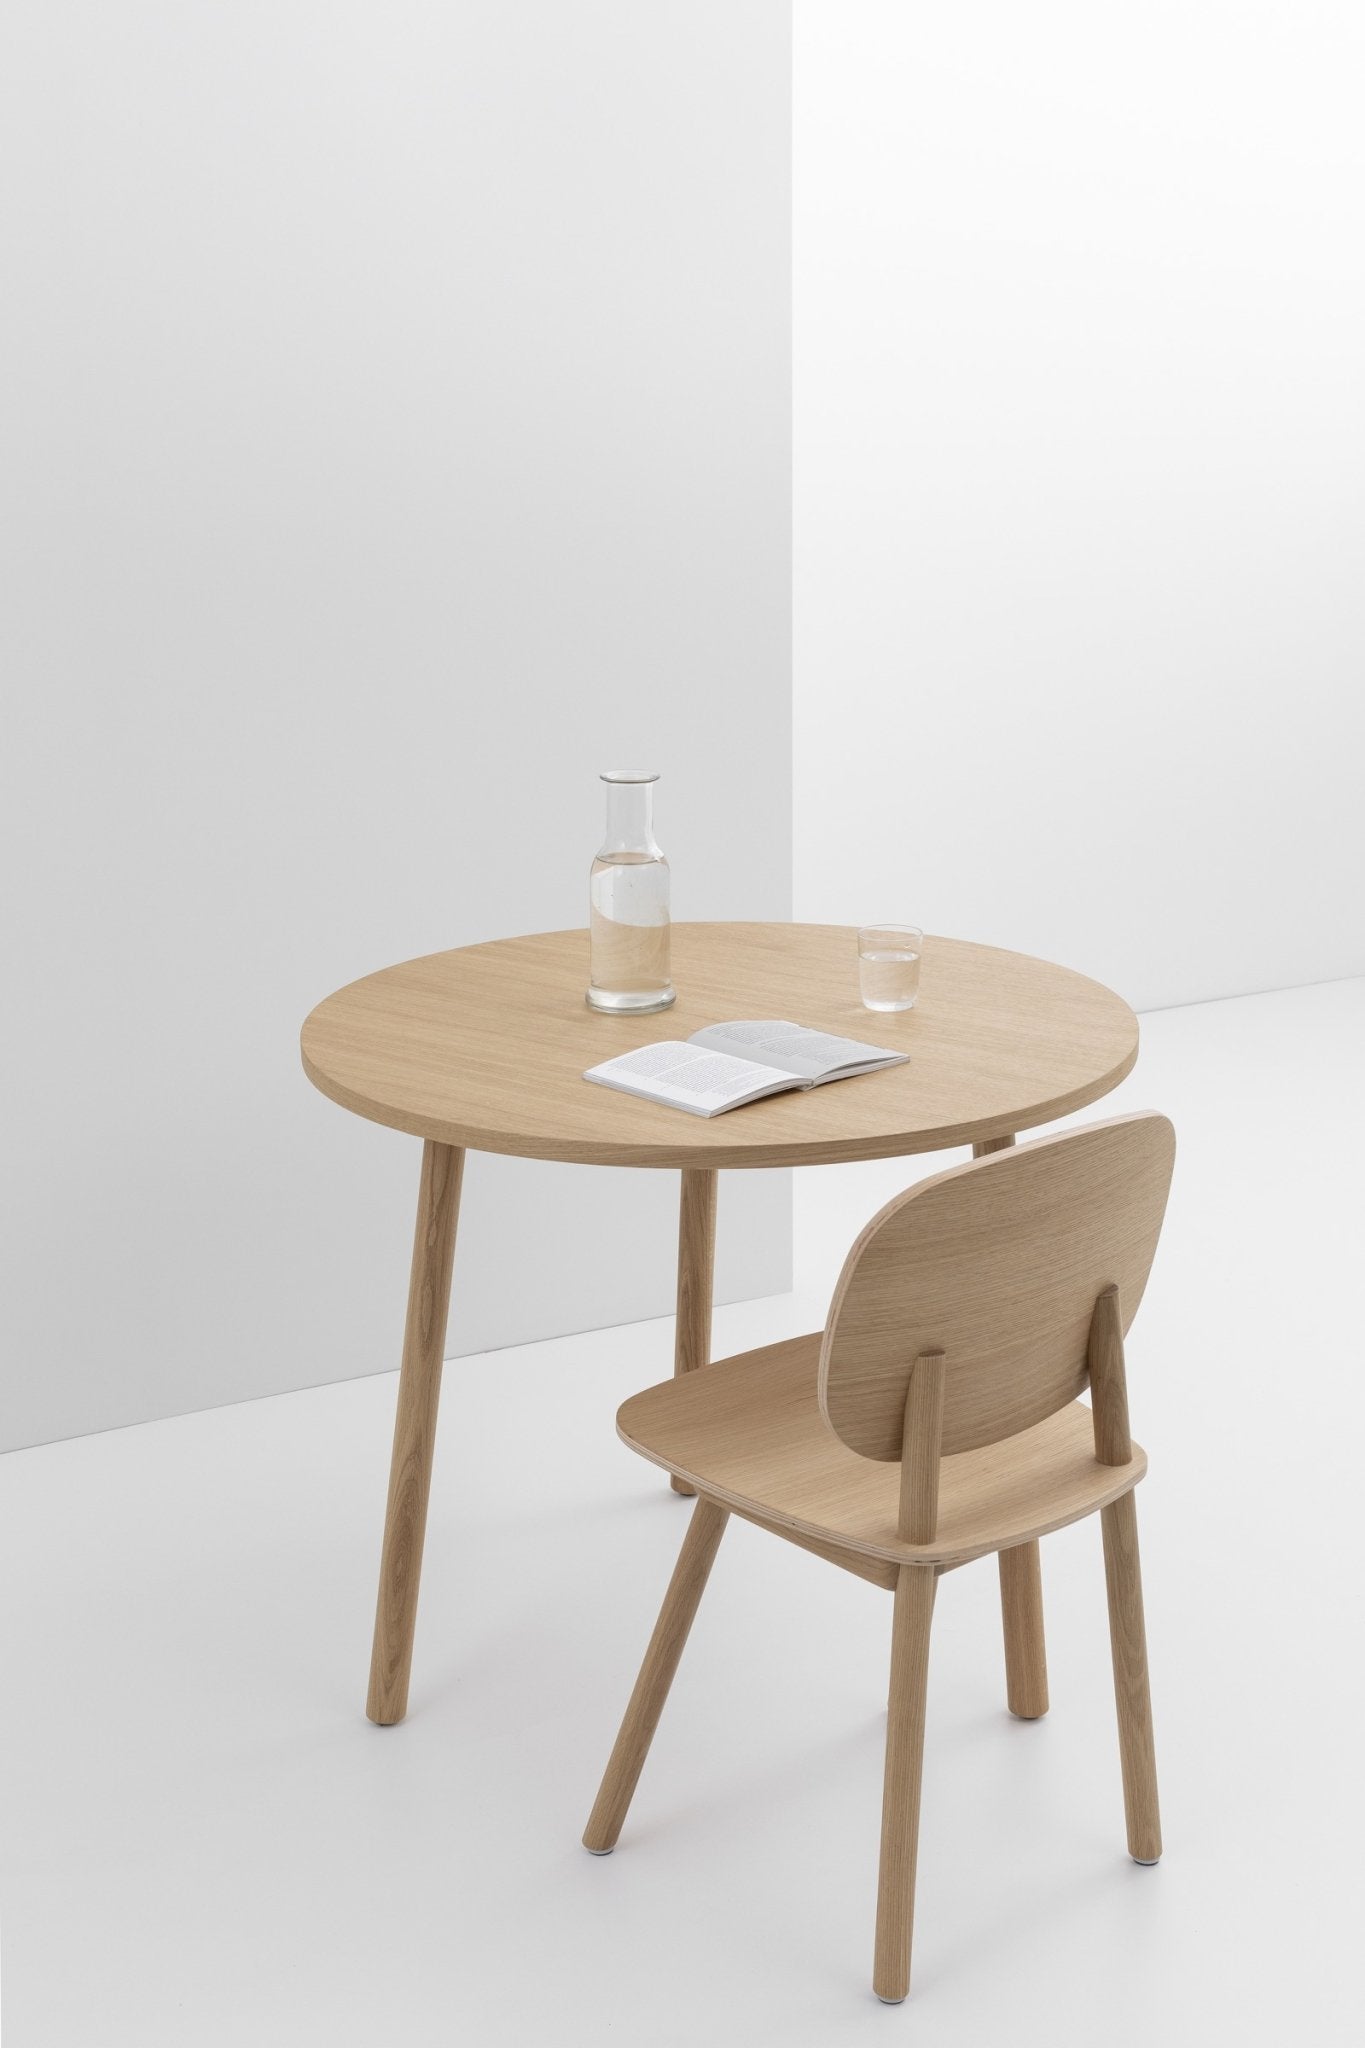 De eiken houten medium PADDLE Round Table van cruso is geschikt voor verschillende behoeften en ruimtes.